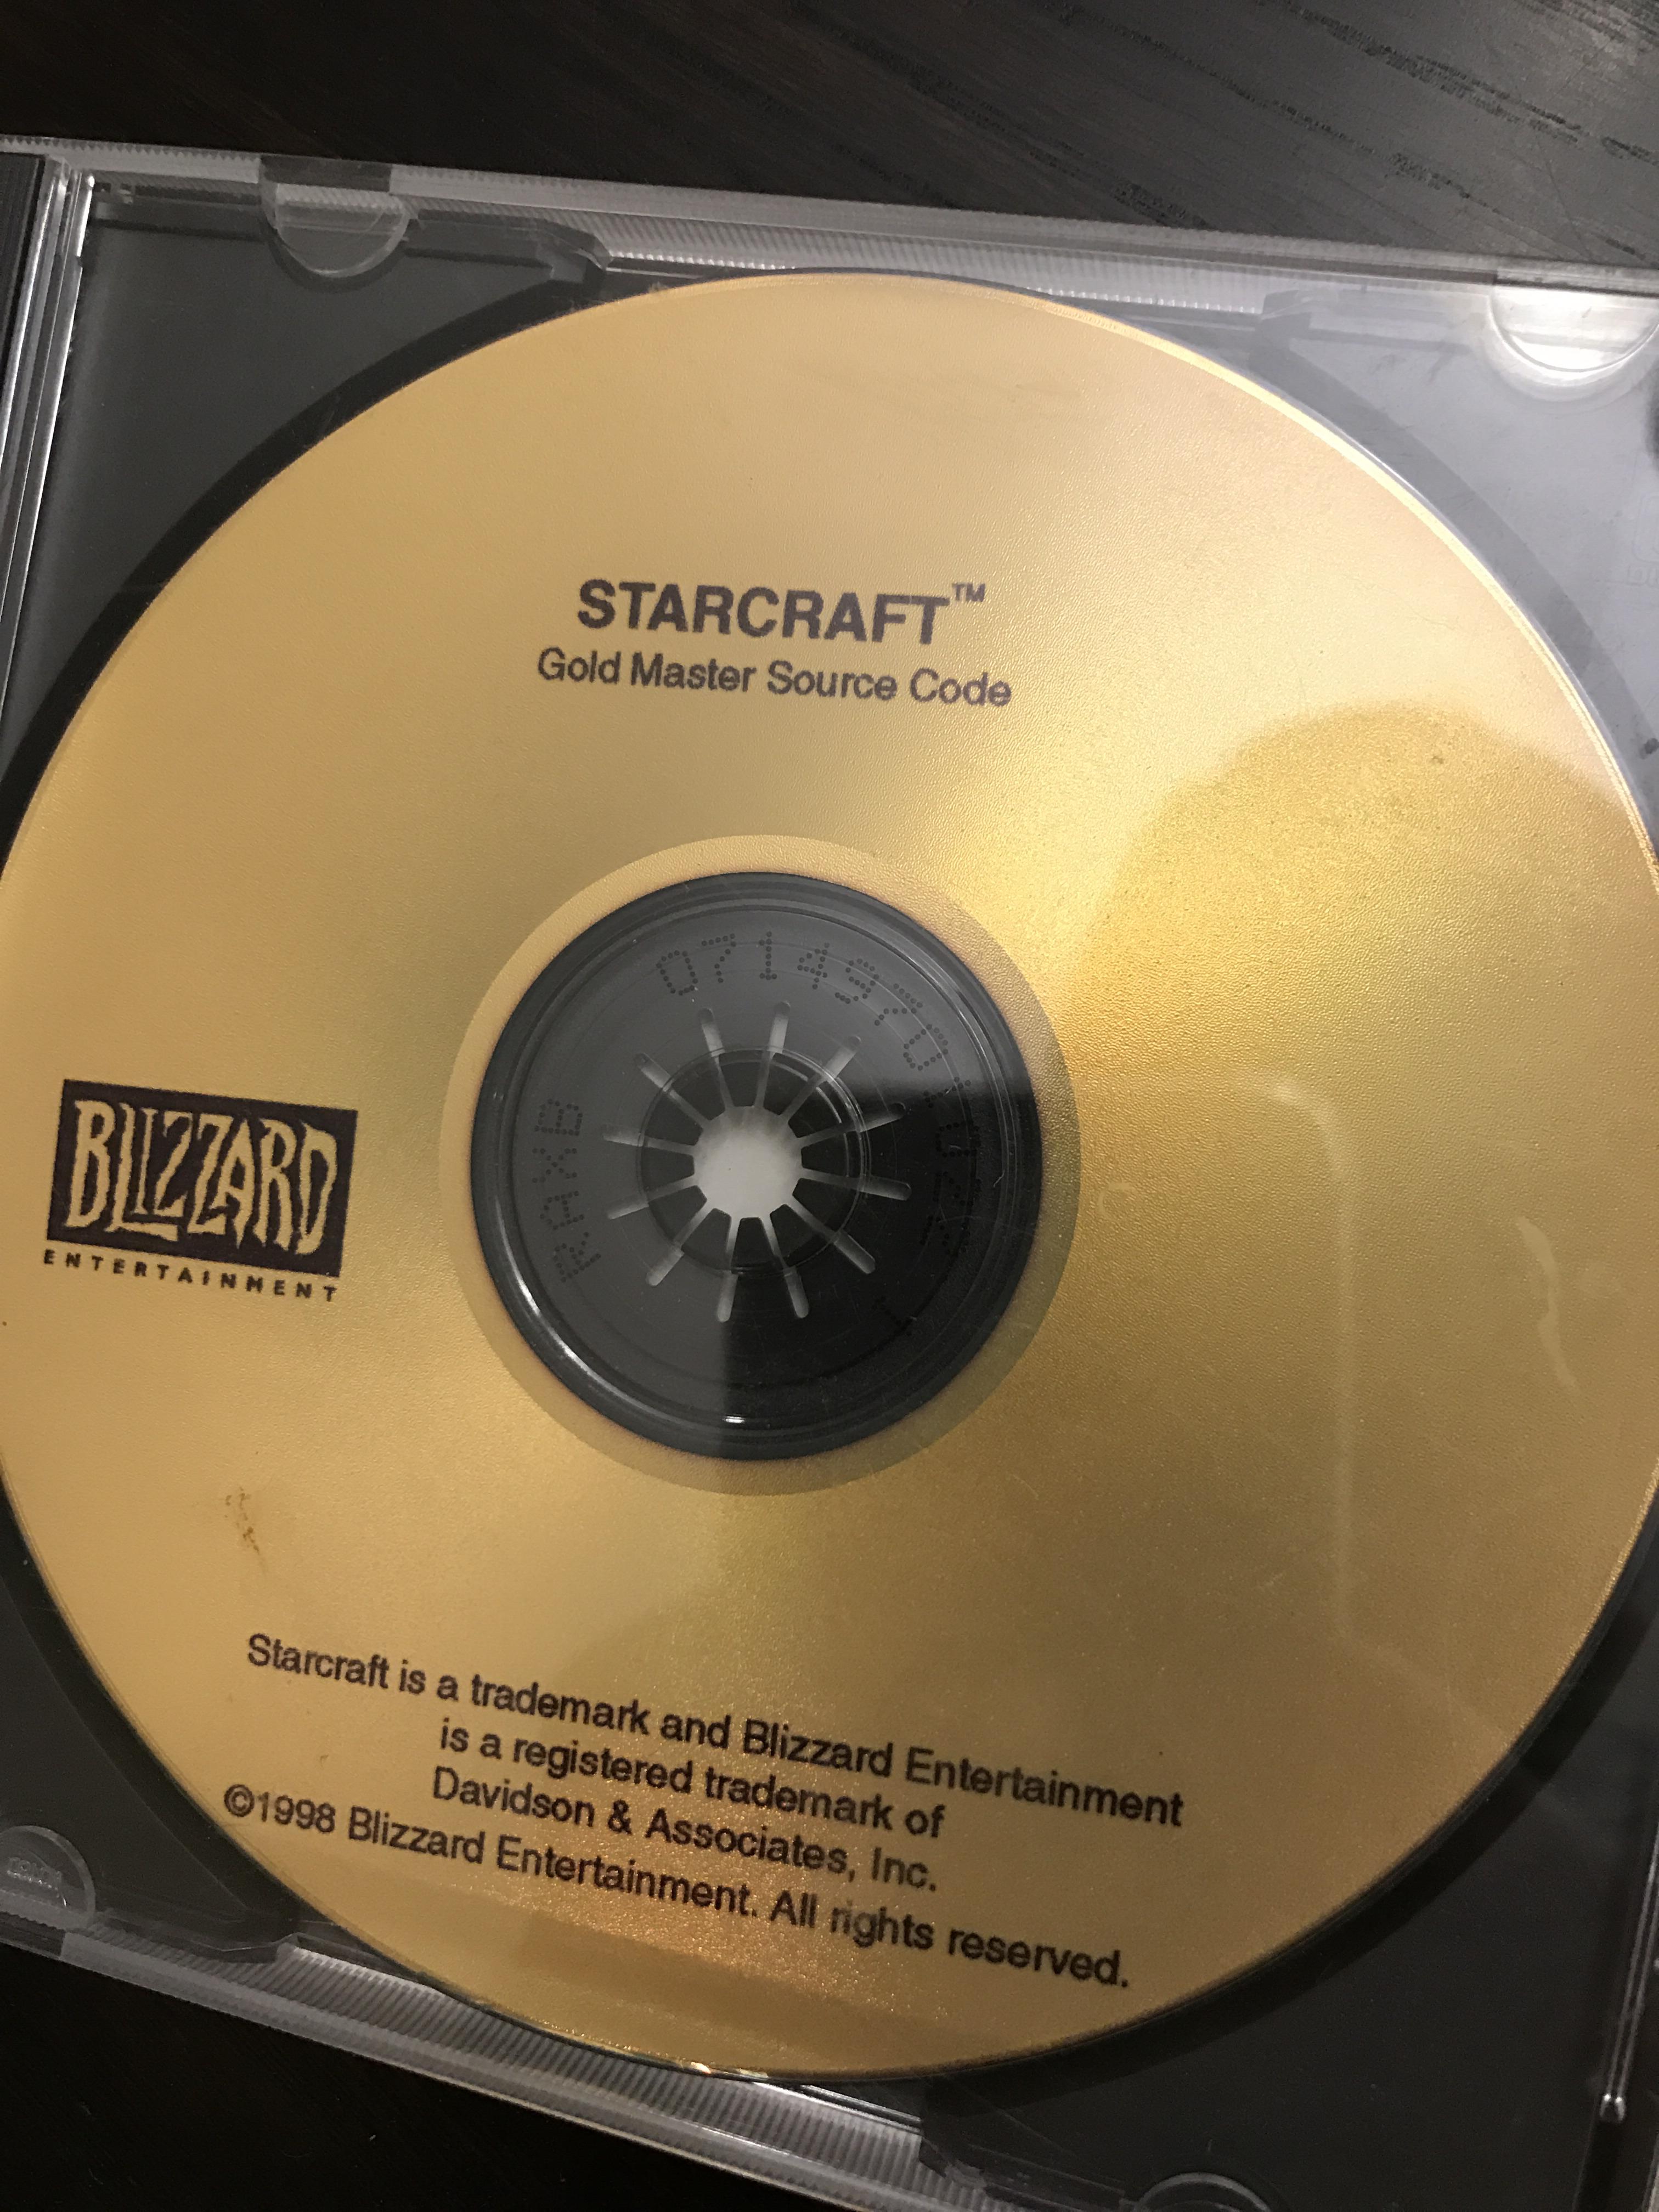 Spieler findet goldene StarCraft-CD, Blizzard überhäuft ihn mit Geschenken